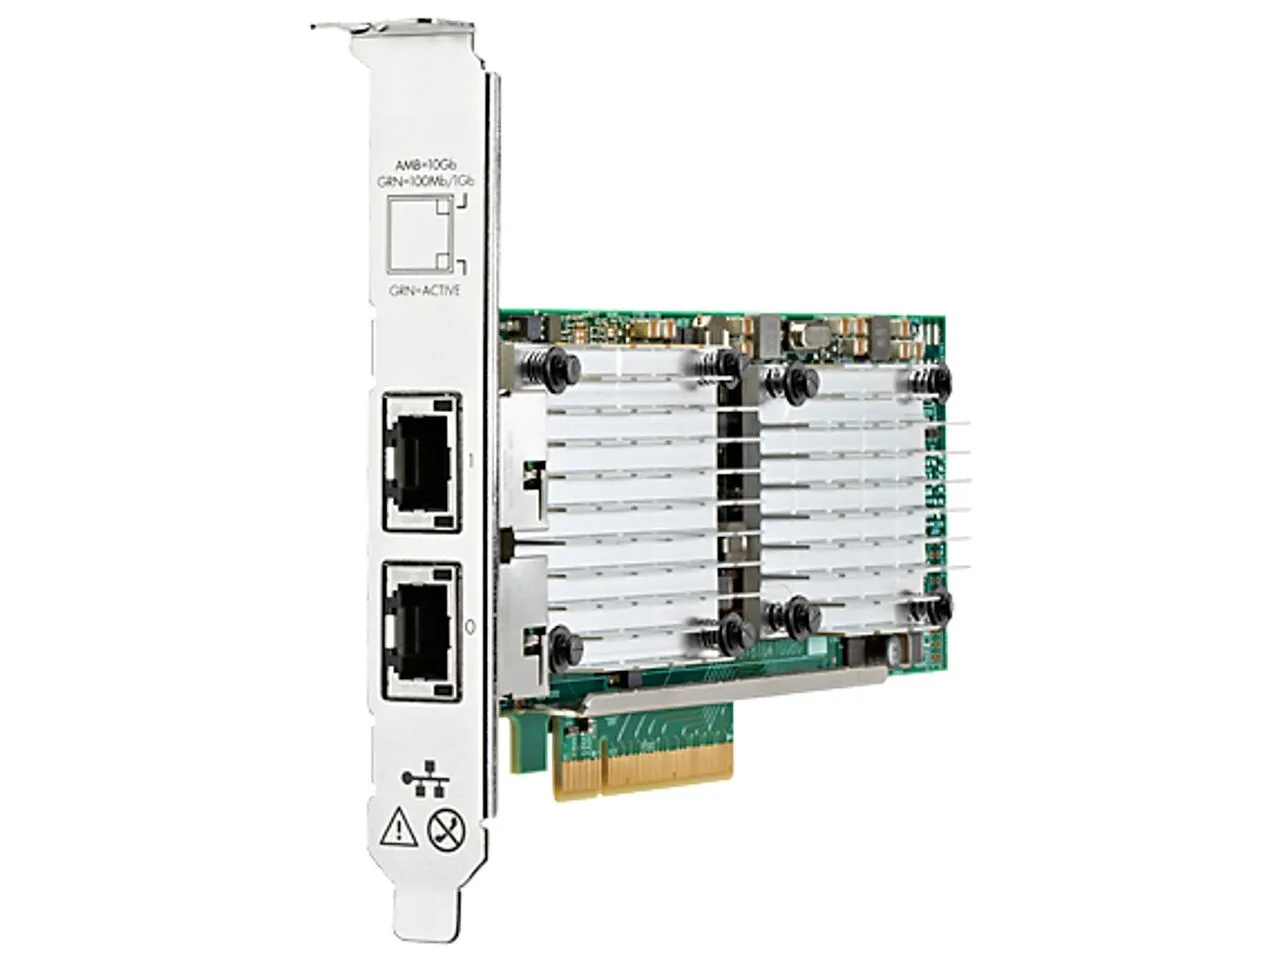   Network Adapter 657128-002 for HPE Proliant ML30 Gen10 Server 